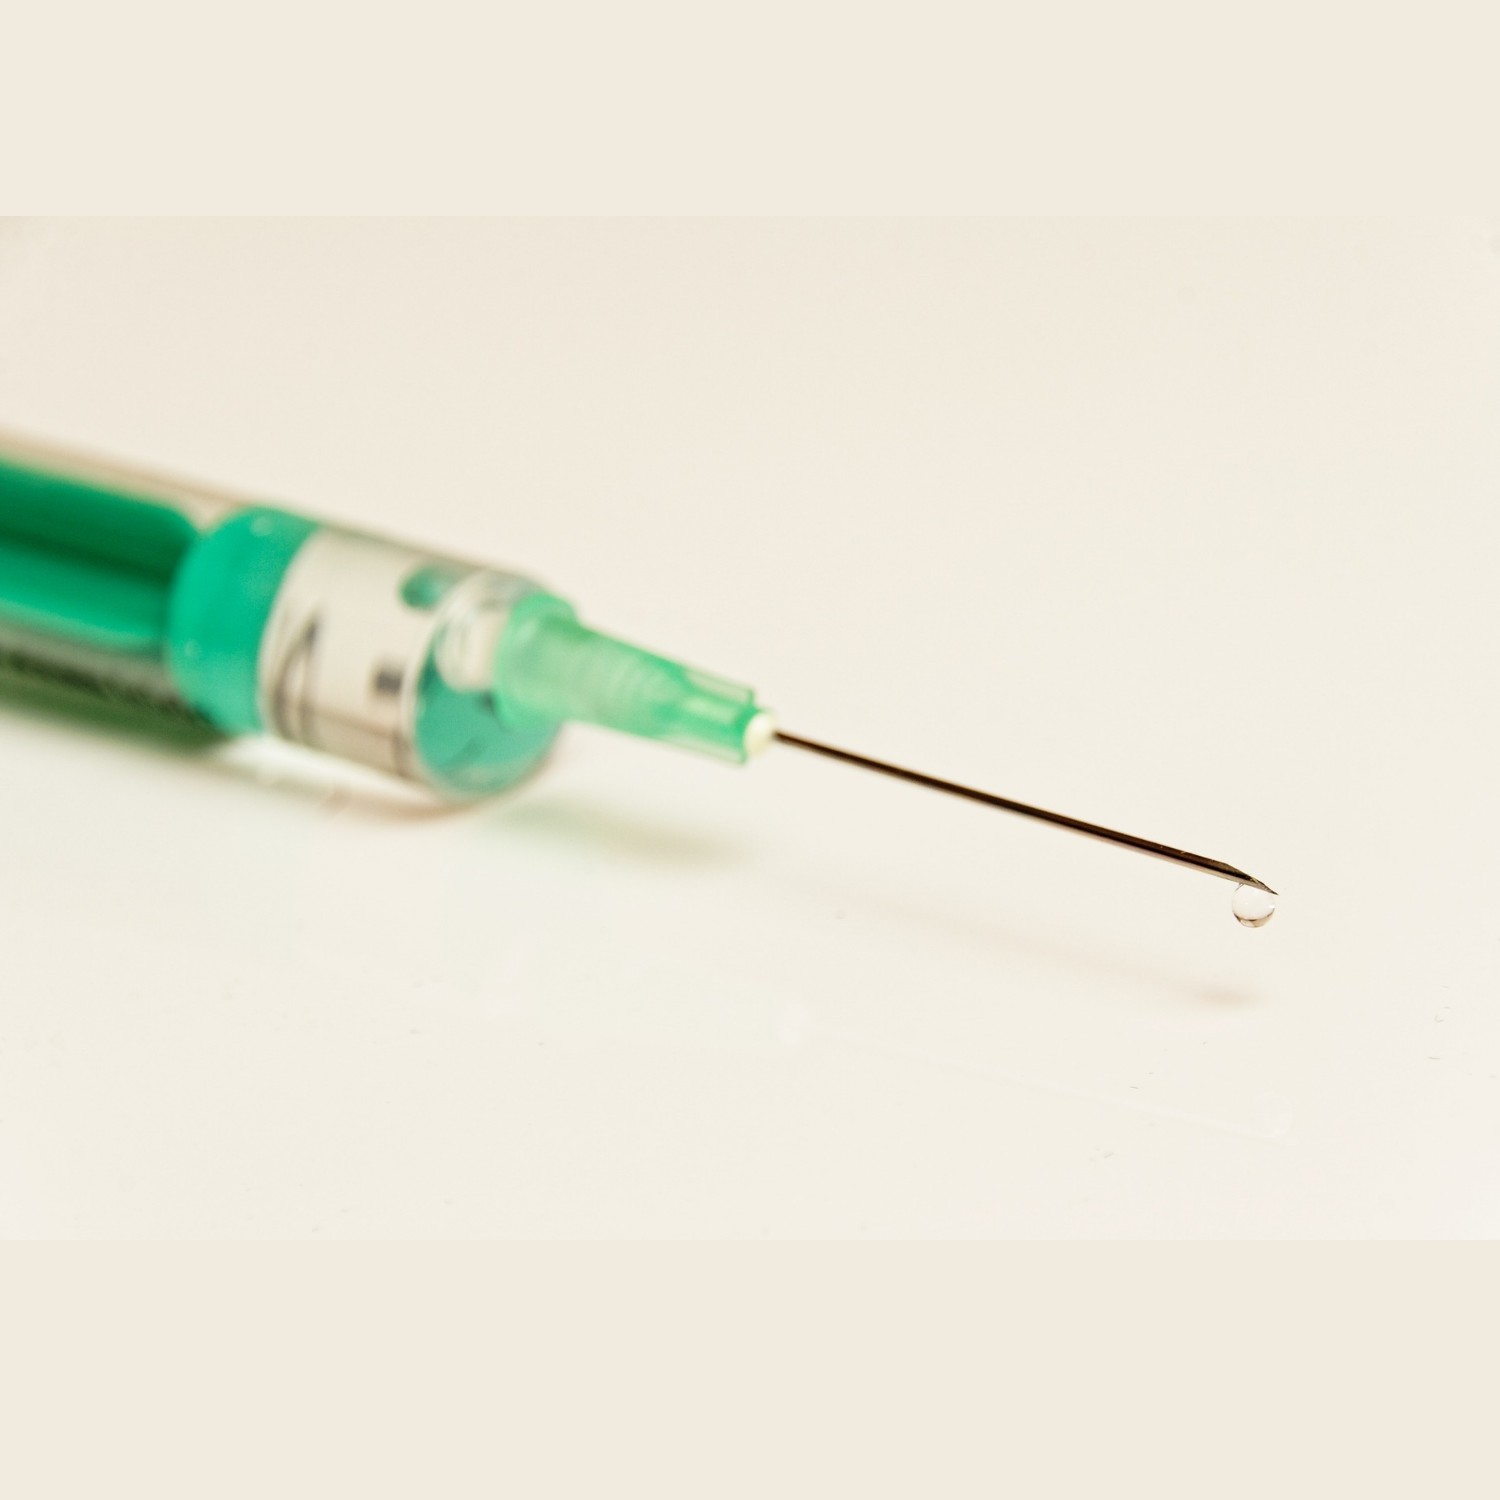 SADE: Tratamento experimental do VIH com uma injeco por ms